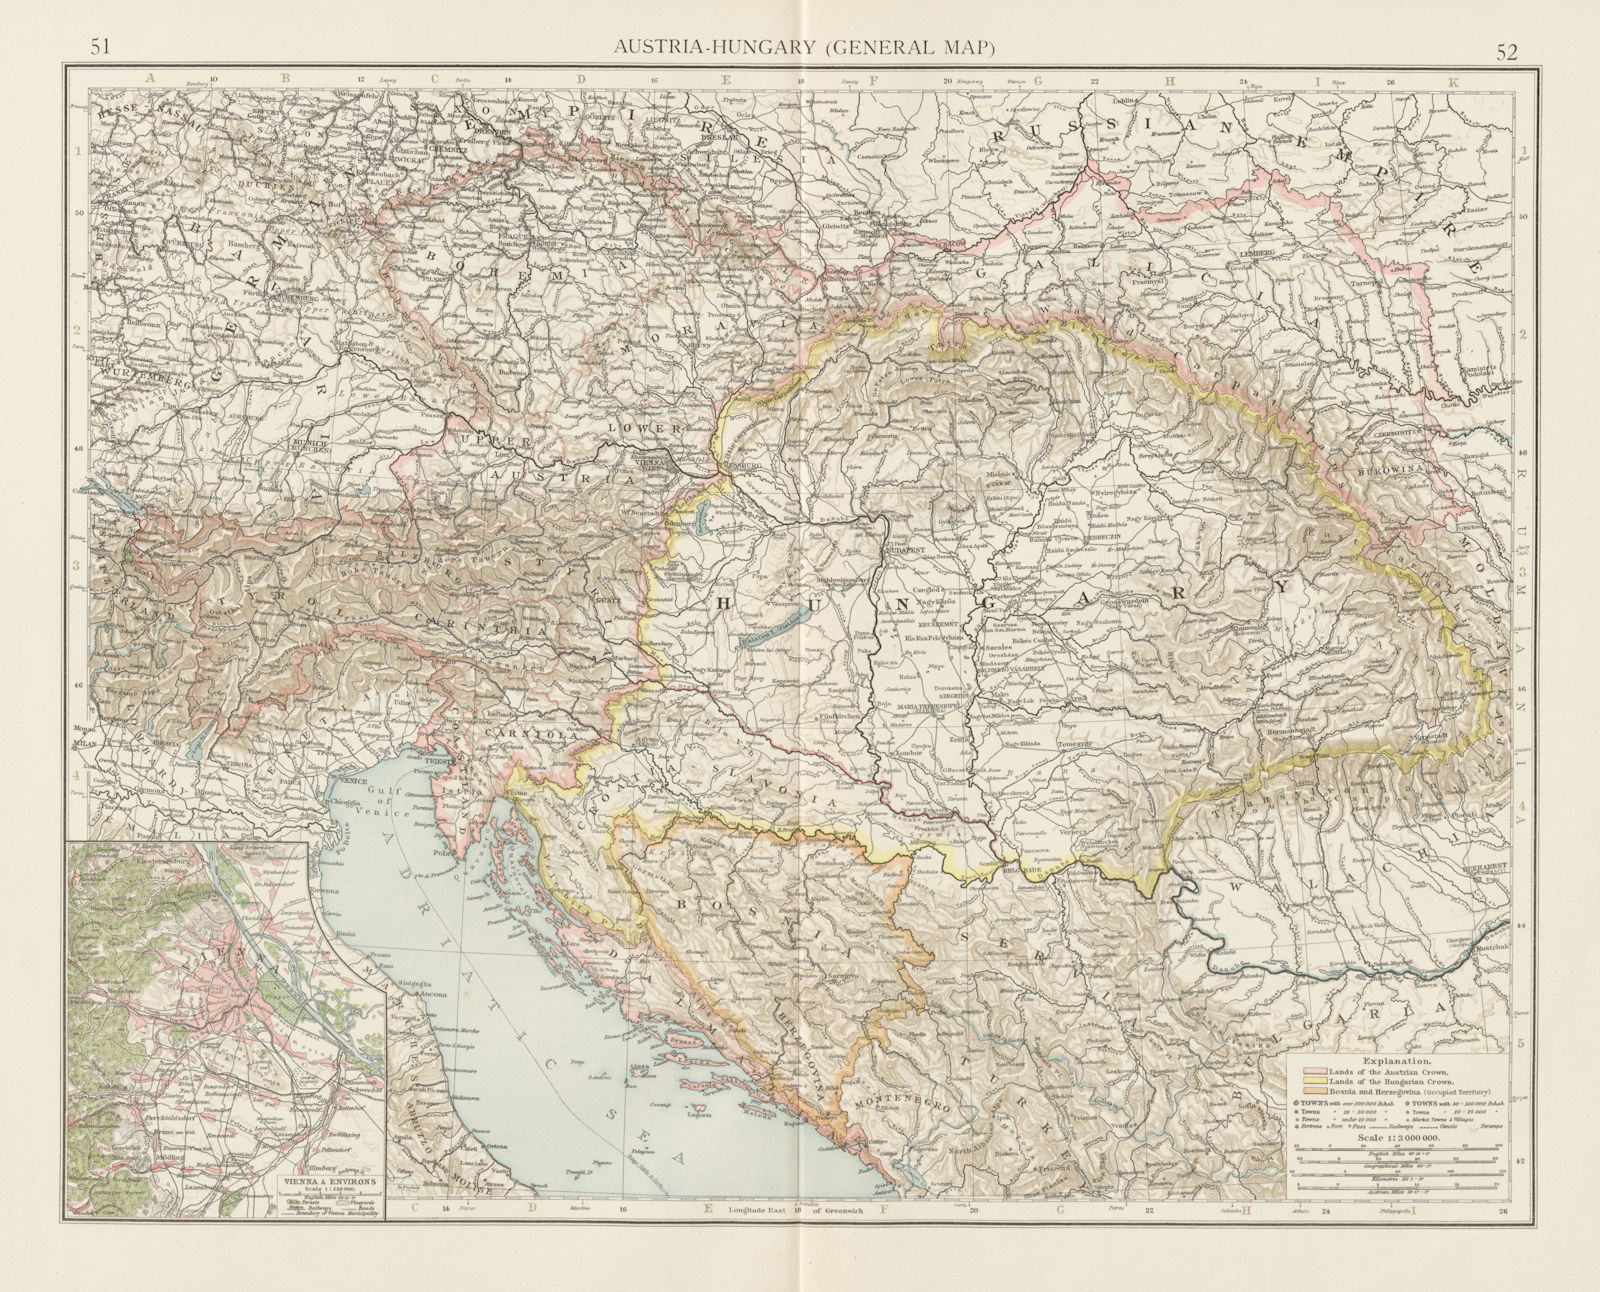 Austria-Hungary. Czechia Croatia Bosnia Serbia. Vienna environs. TIMES 1900 map